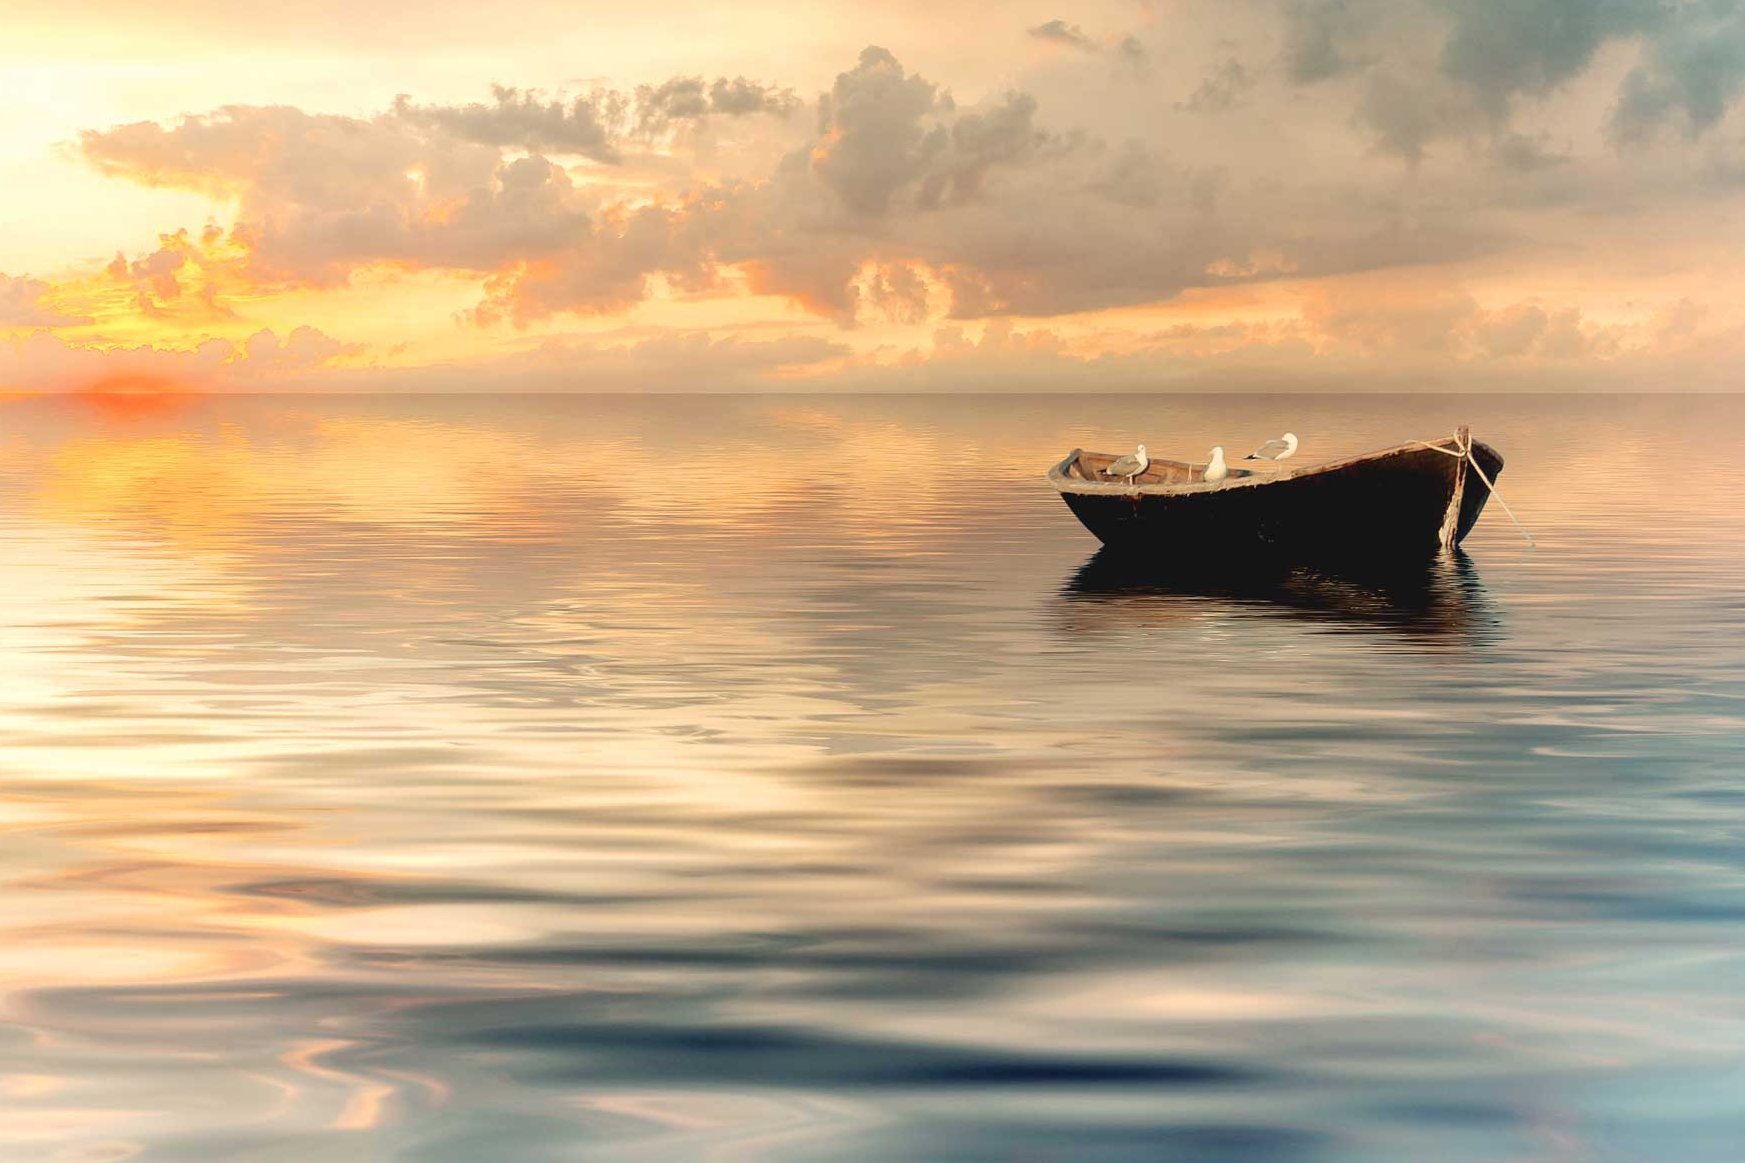 Ein Boot treibt auf dem ruhigen Meer im Sonnenuntergang.